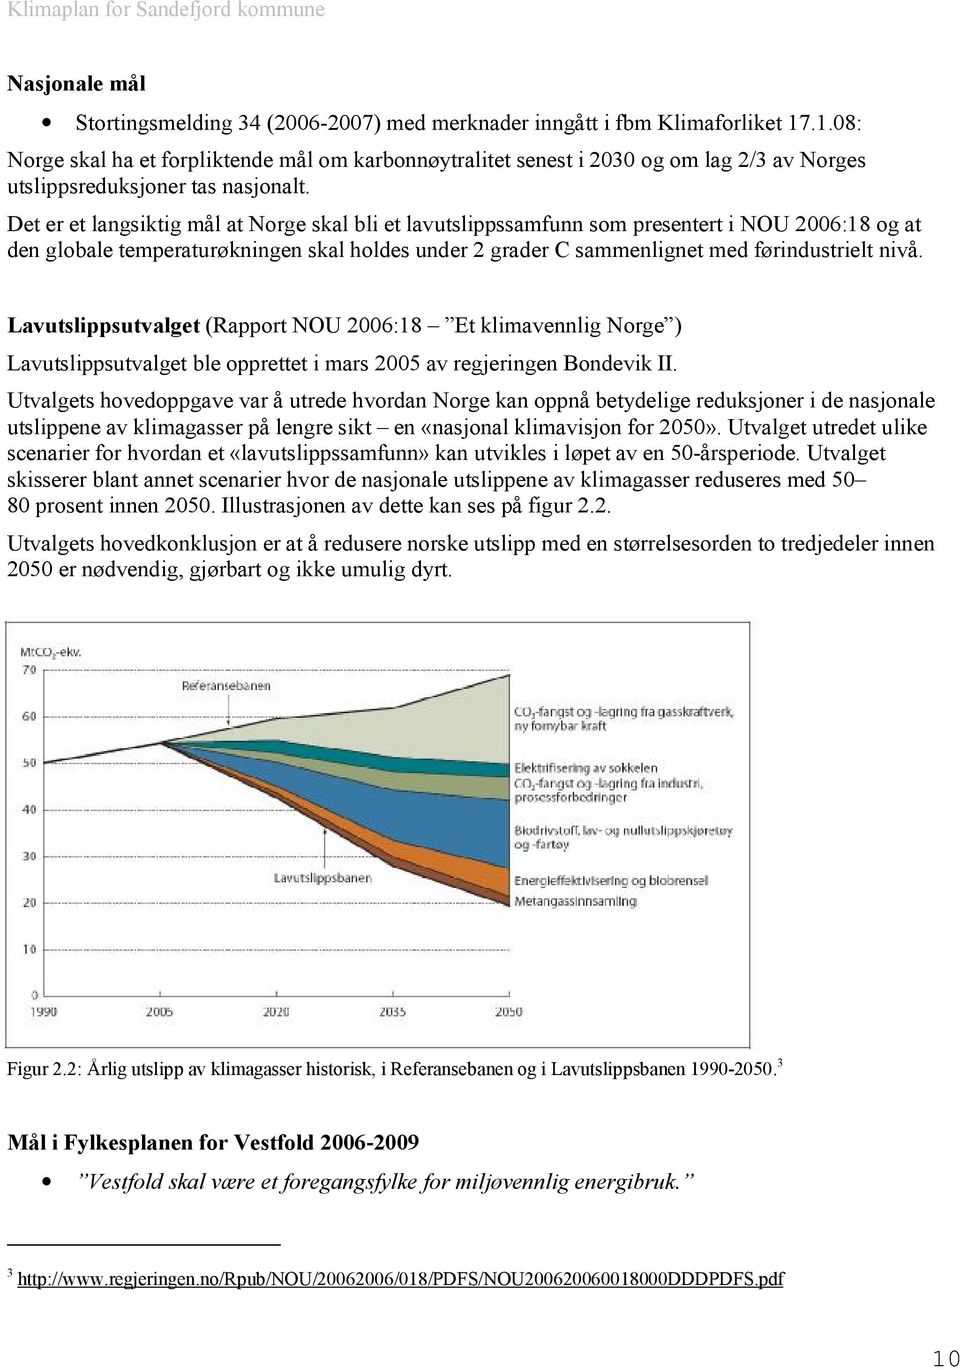 Det er et langsiktig mål at Norge skal bli et lavutslippssamfunn som presentert i NOU 2006:18 og at den globale temperaturøkningen skal holdes under 2 grader C sammenlignet med førindustrielt nivå.